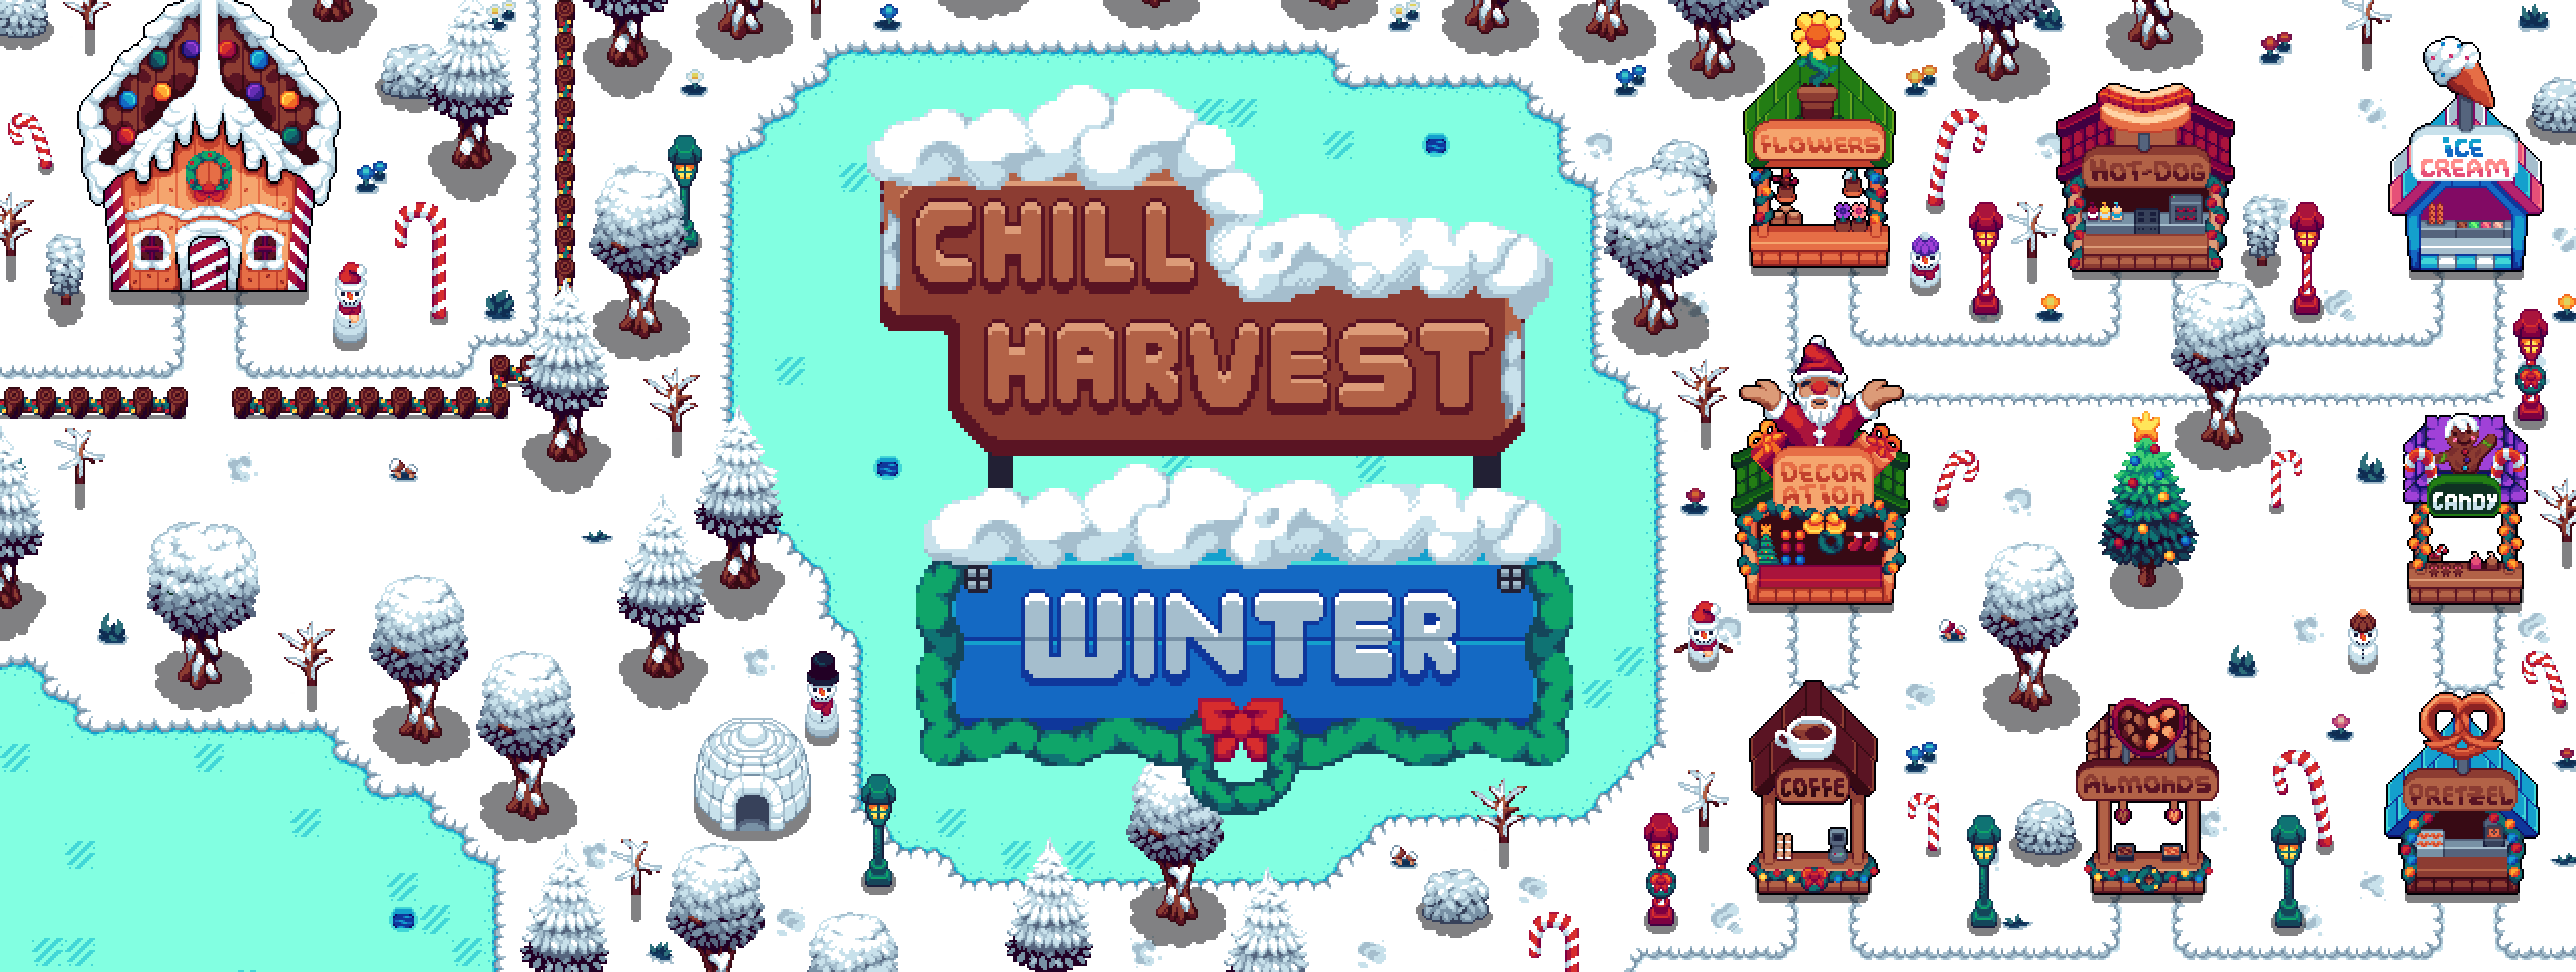 Chill Harvest | Winter